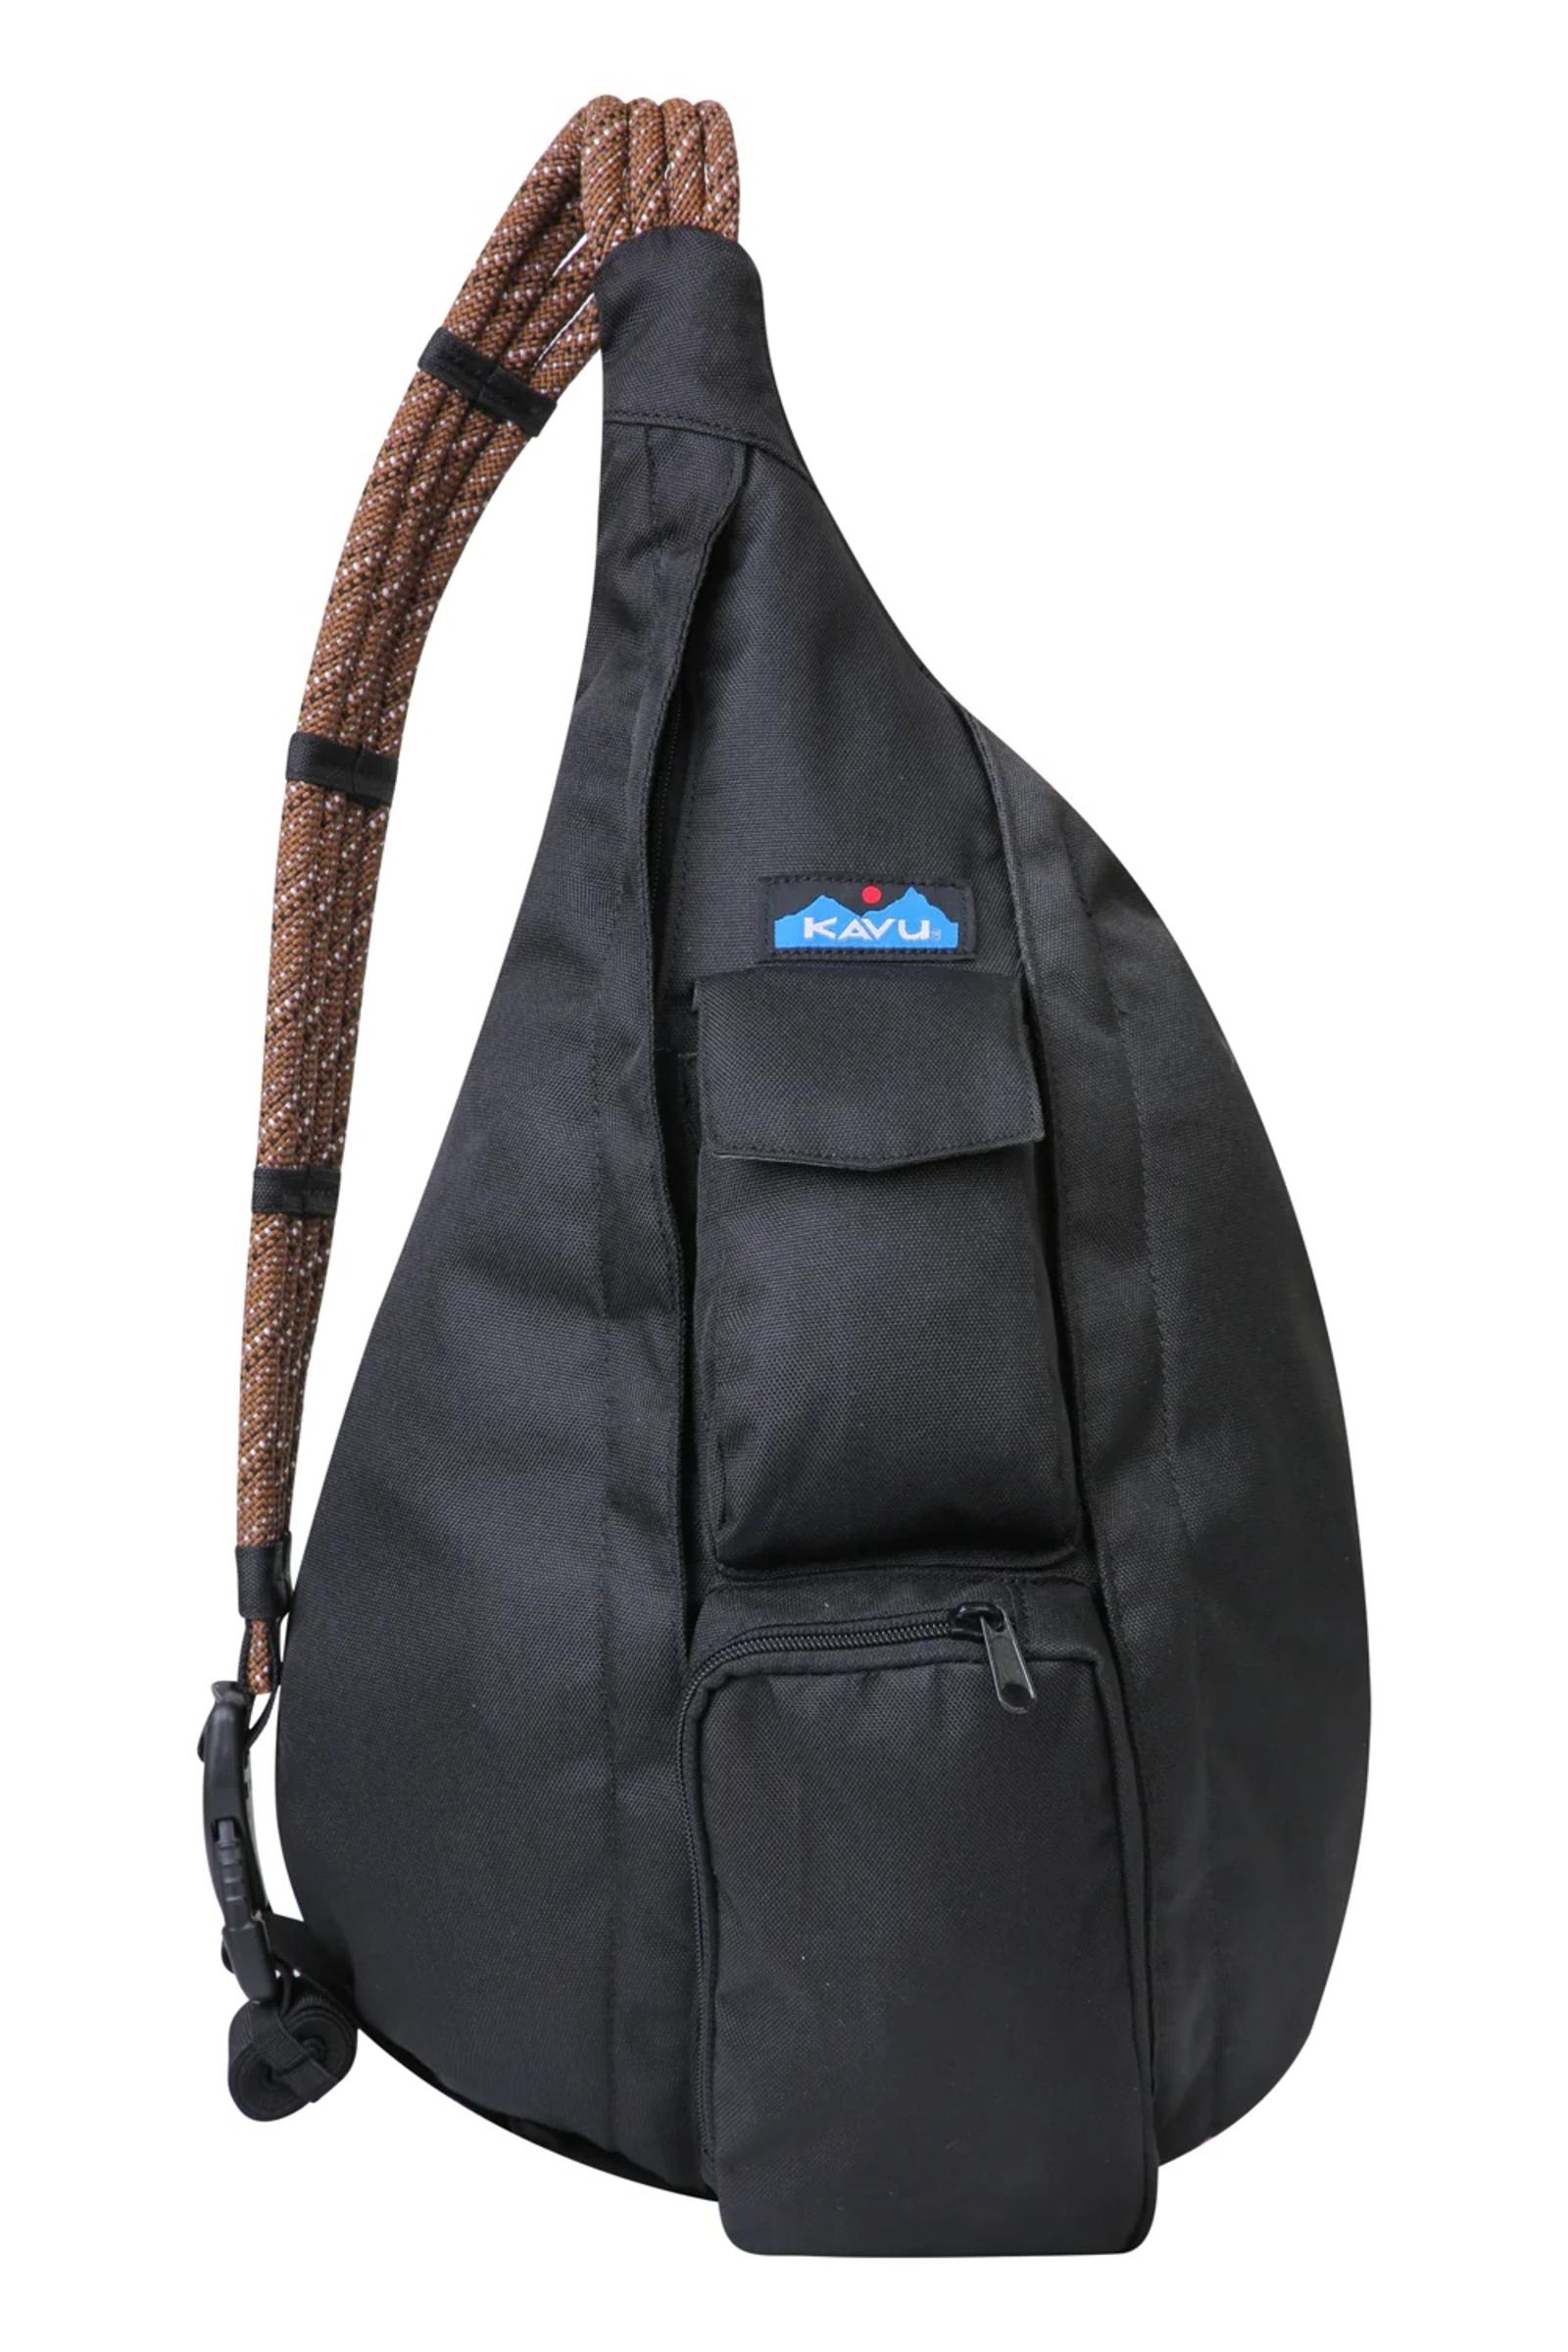 KAVU Rope Sling Bag Crossbody Shoulder Hiking Backpack Mint/Turquoise | eBay